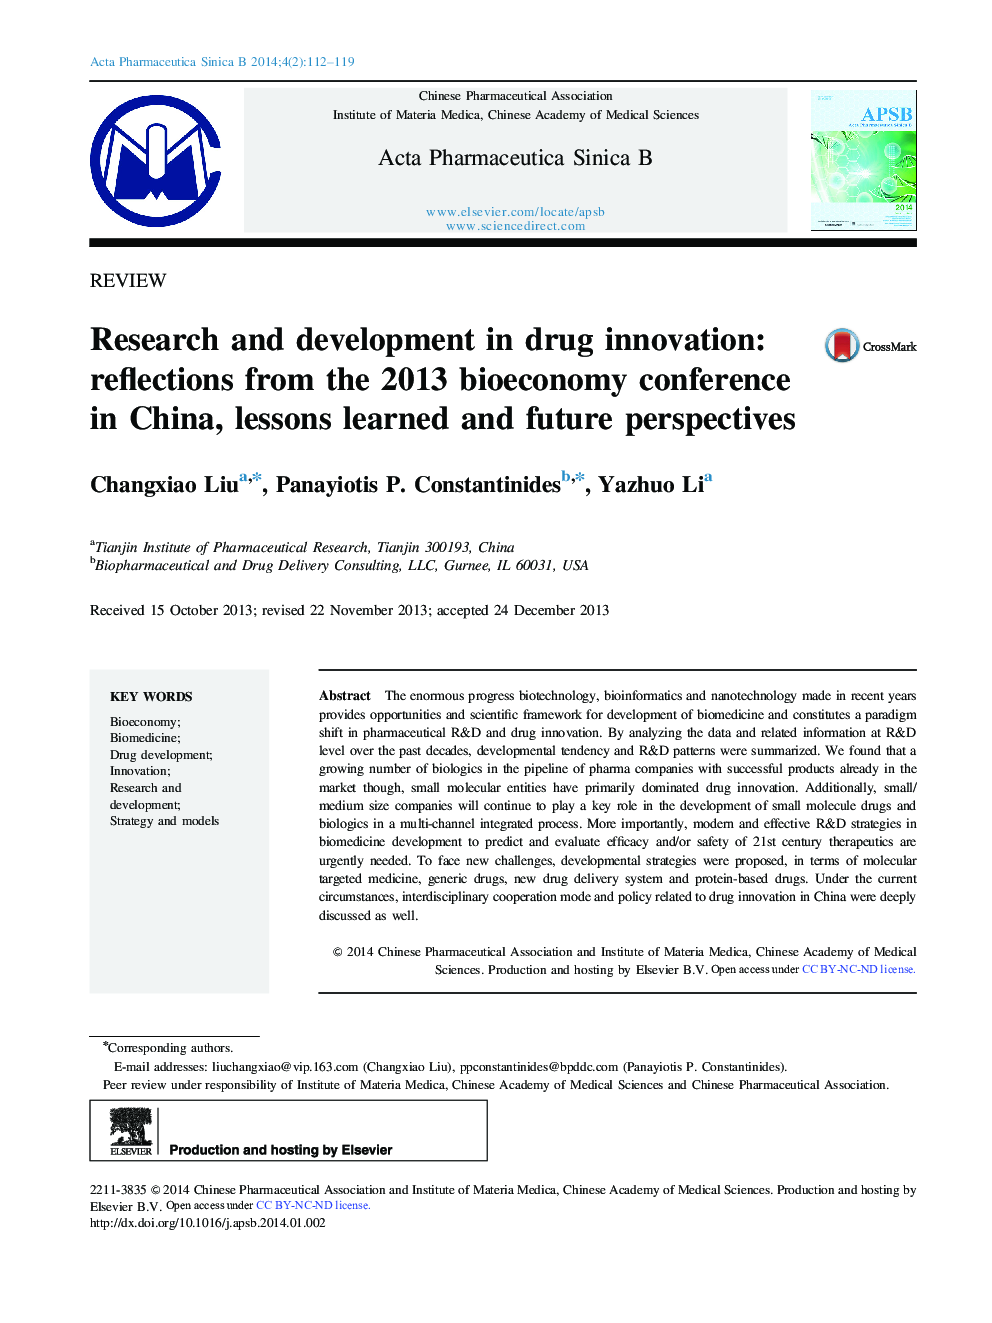 تحقیق و توسعه در نوآوری مواد مخدر: بازتاب های کنفرانس زیستی 2013 در چین، درس های آموخته شده و دیدگاه های آینده 